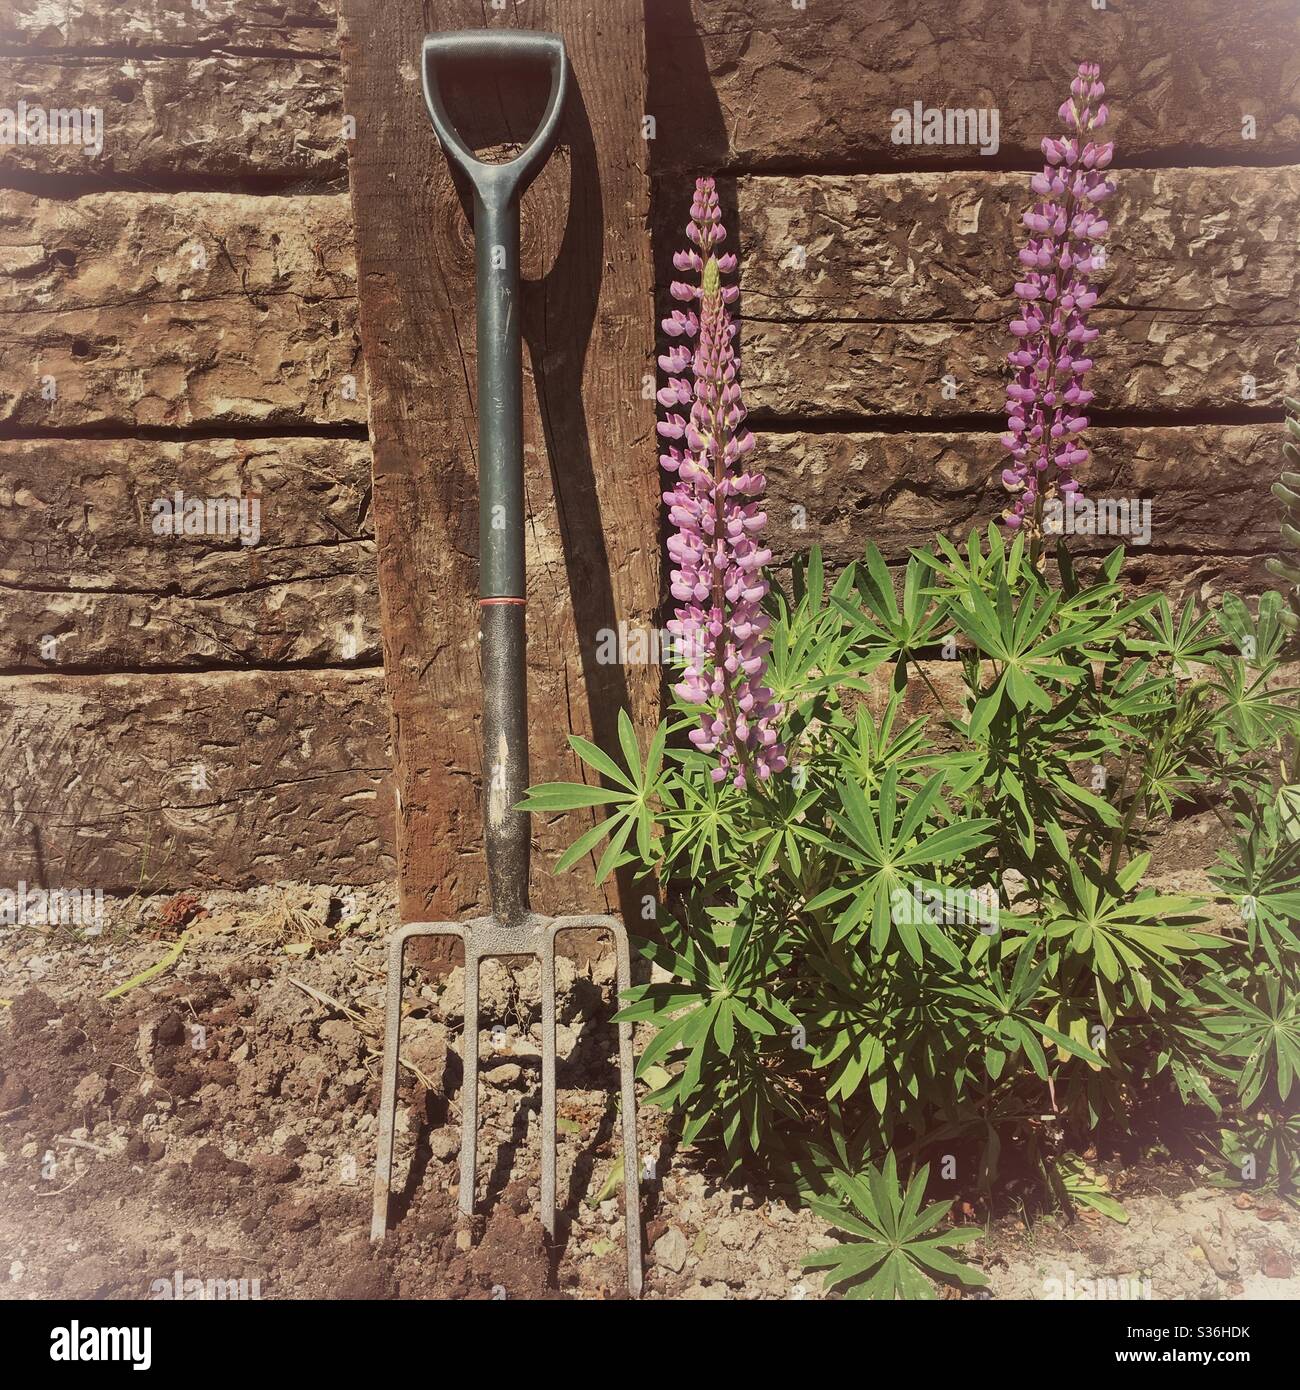 Una fotografia di una forchetta da giardinaggio e piante lupini in un giardino soleggiato. Legno traversina tronchi sfondo. Foto Stock